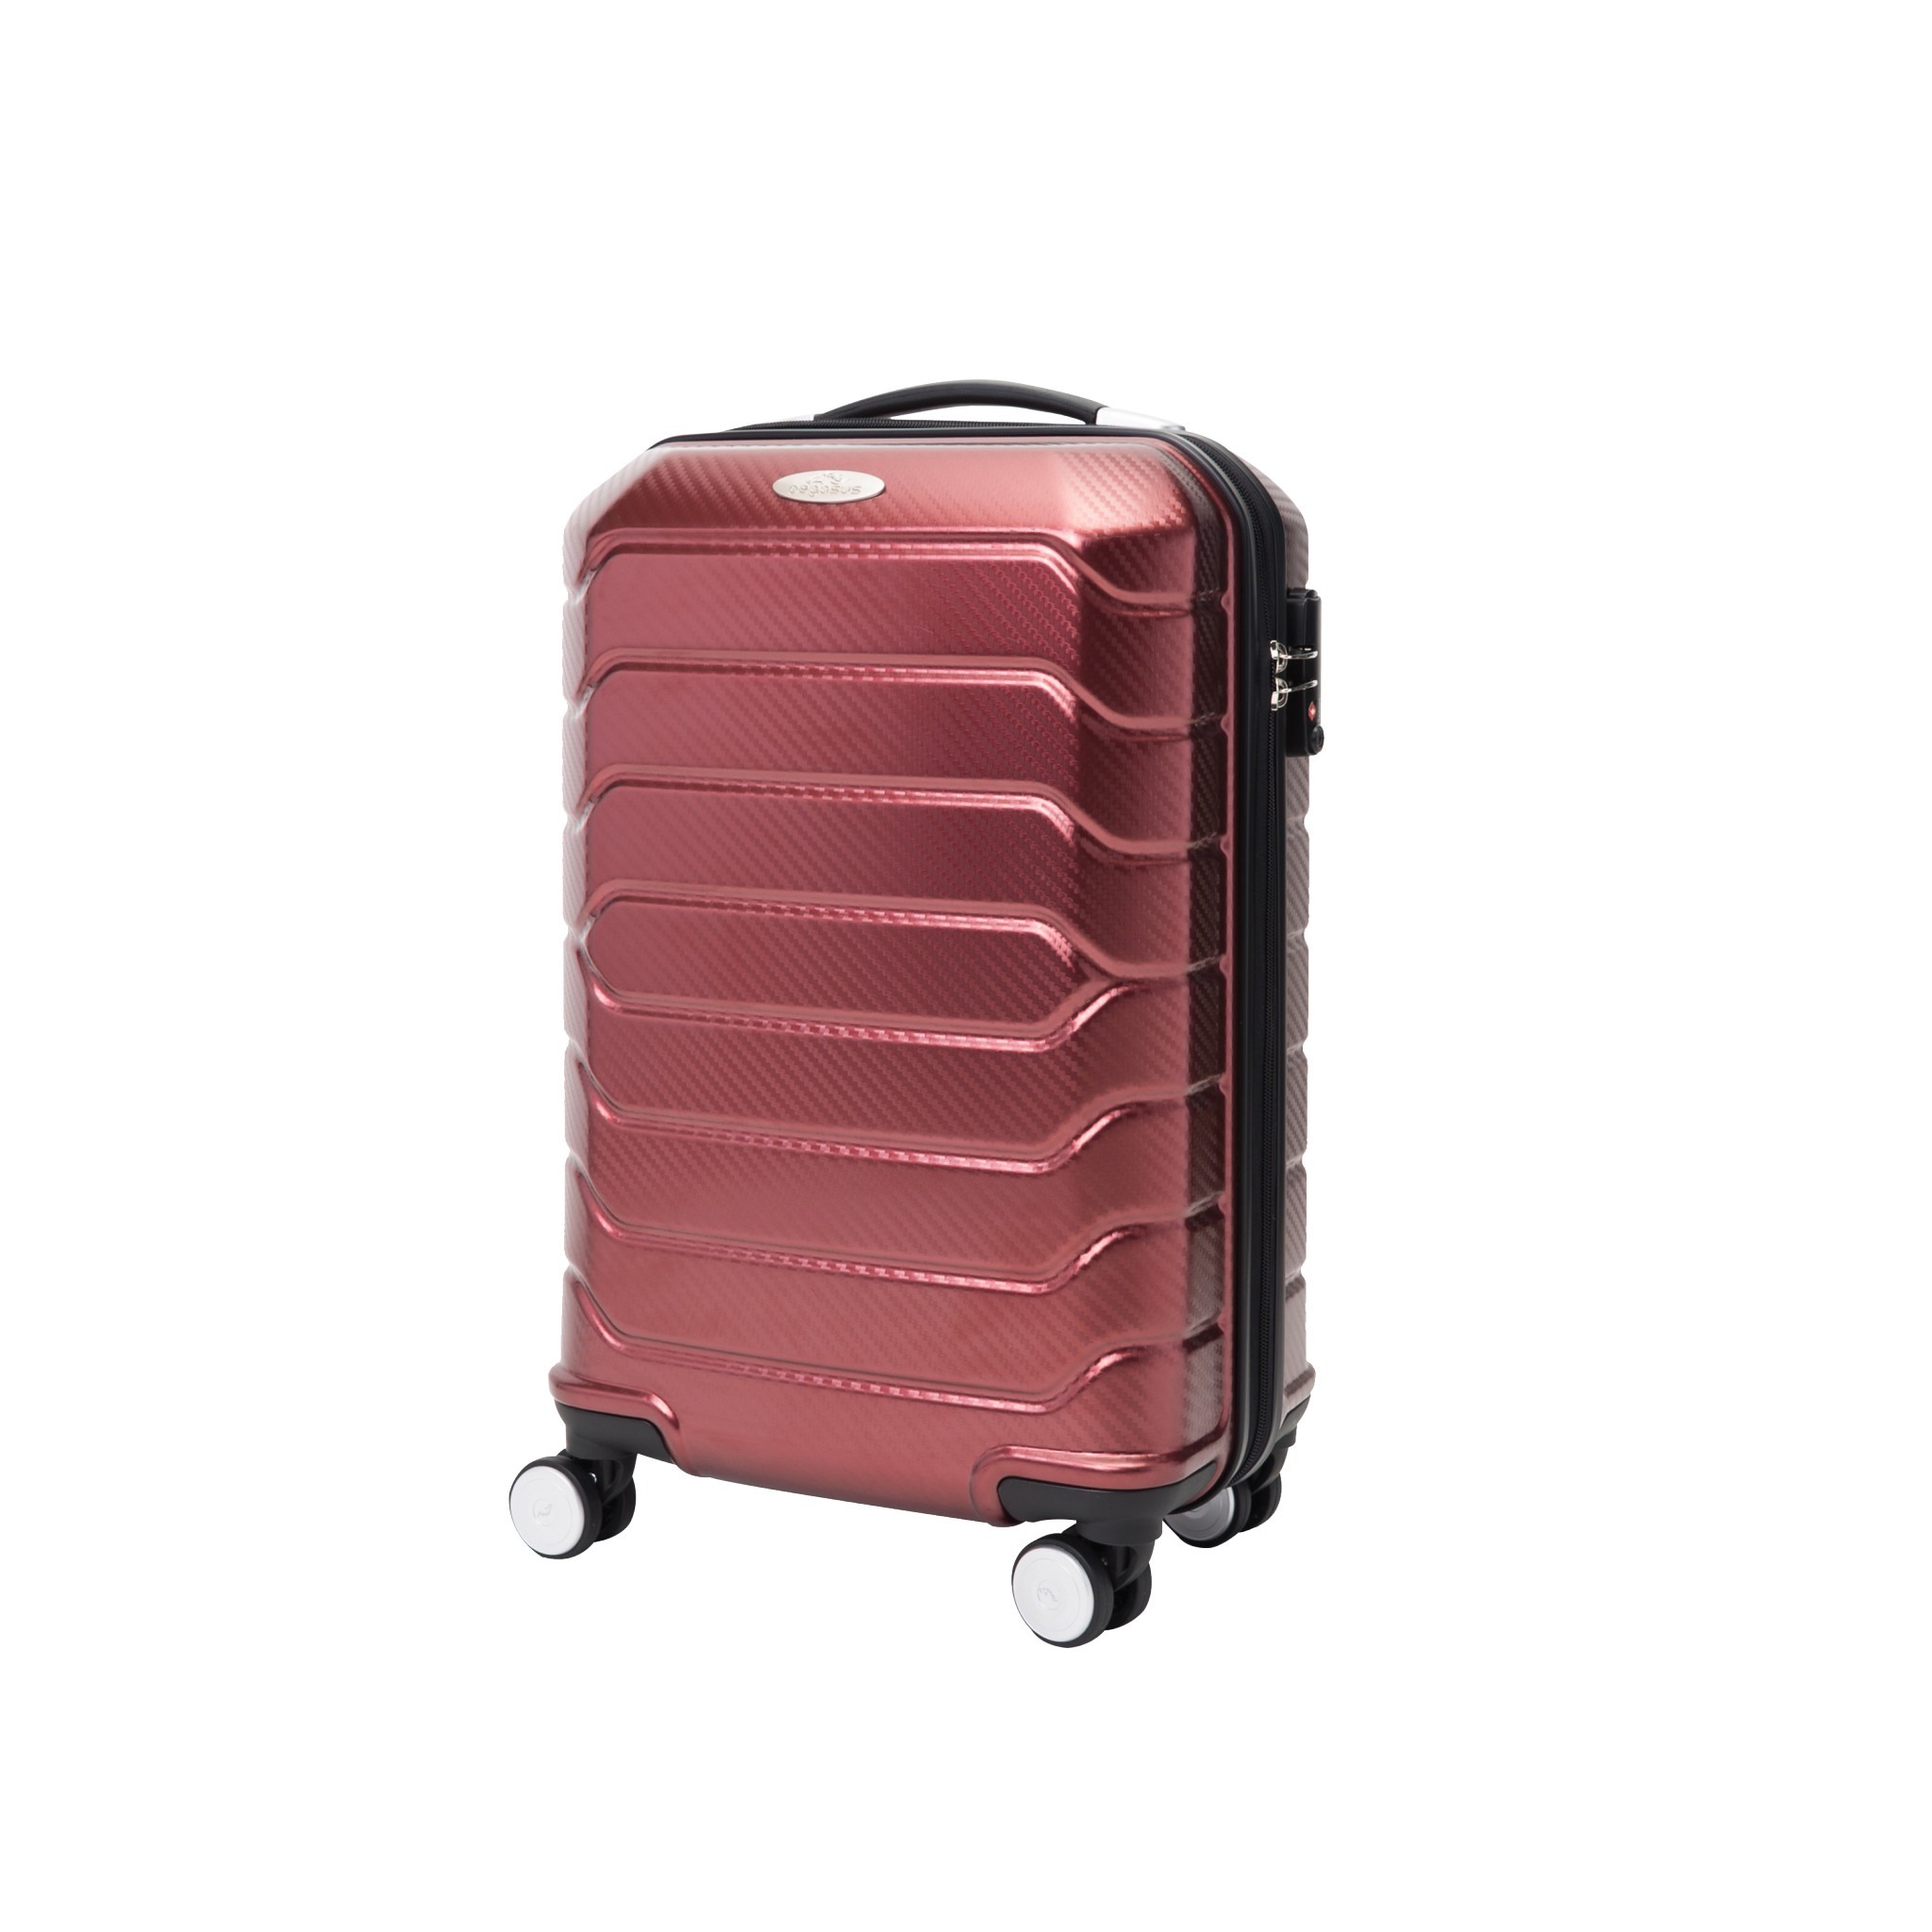 กระเป๋าเดินทางล้อลาก รุ่น ESPERIA ขนาด 20 นิ้ว สีแดง